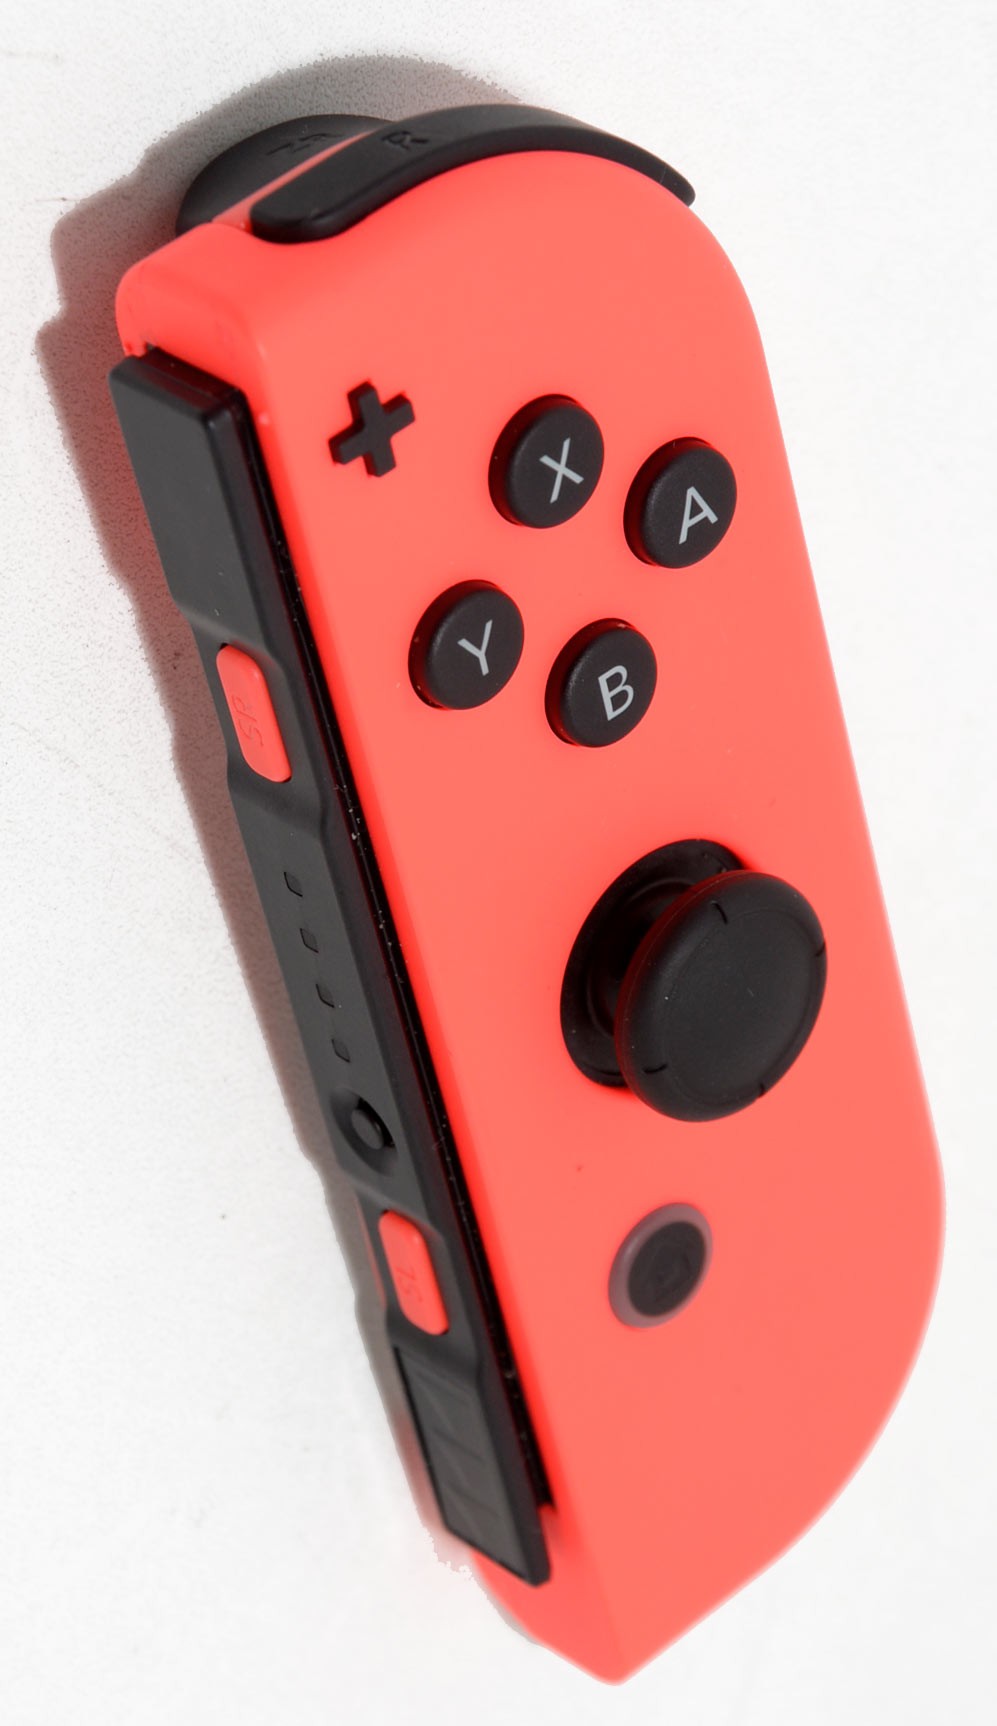 Mando Joy-Con Izquierda-Derecha Azul y Rojo para Nintendo Switch